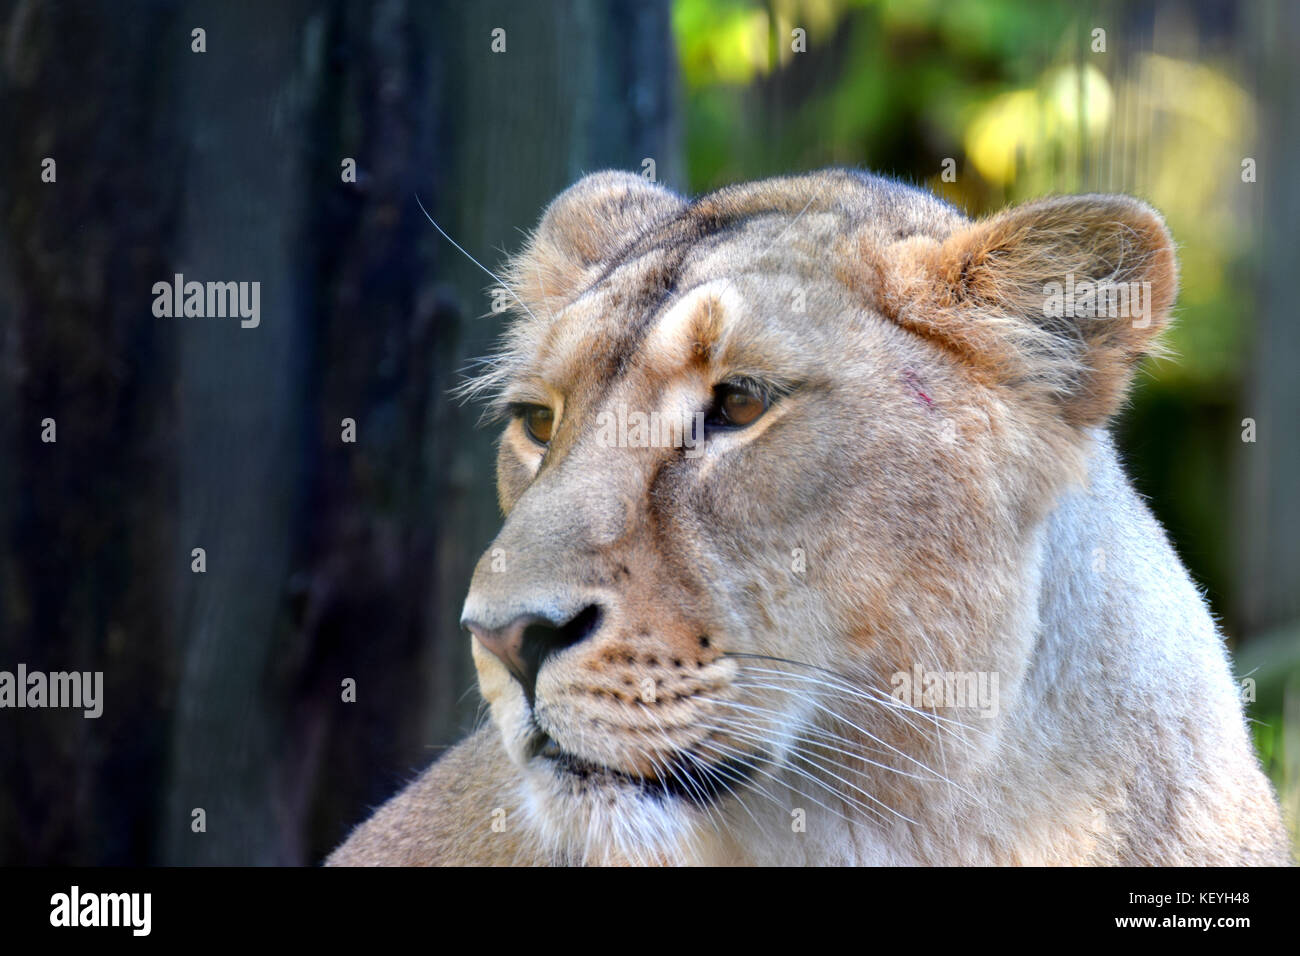 Asian lioness head close up image. Female lion portrait. Stock Photo